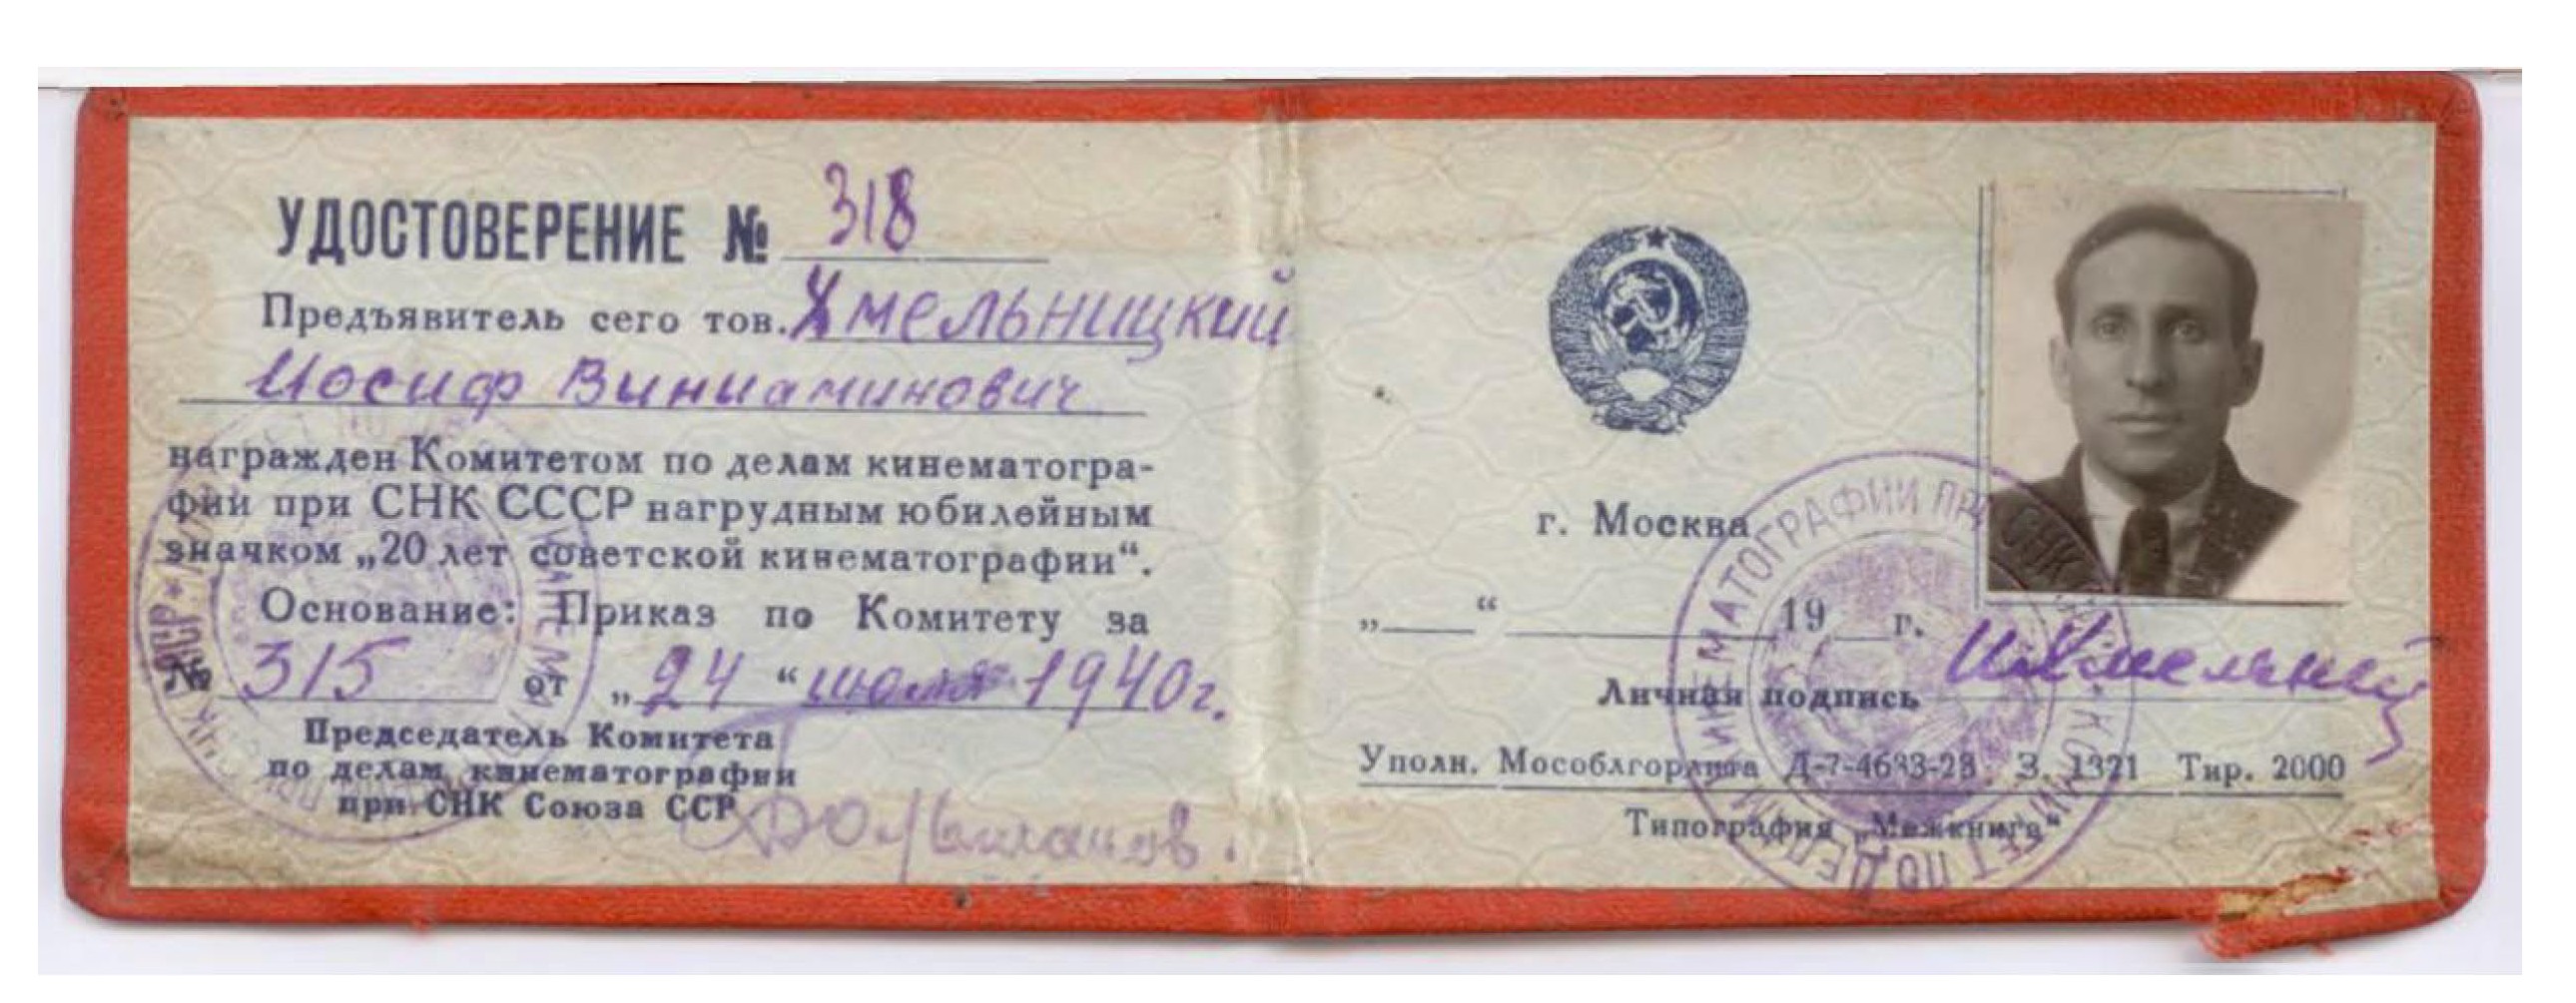 Экспонат #26. Удостоверение к нагрудному юбилейному значку «20 лет Советской кинематографии» от  24 июля 1940 года